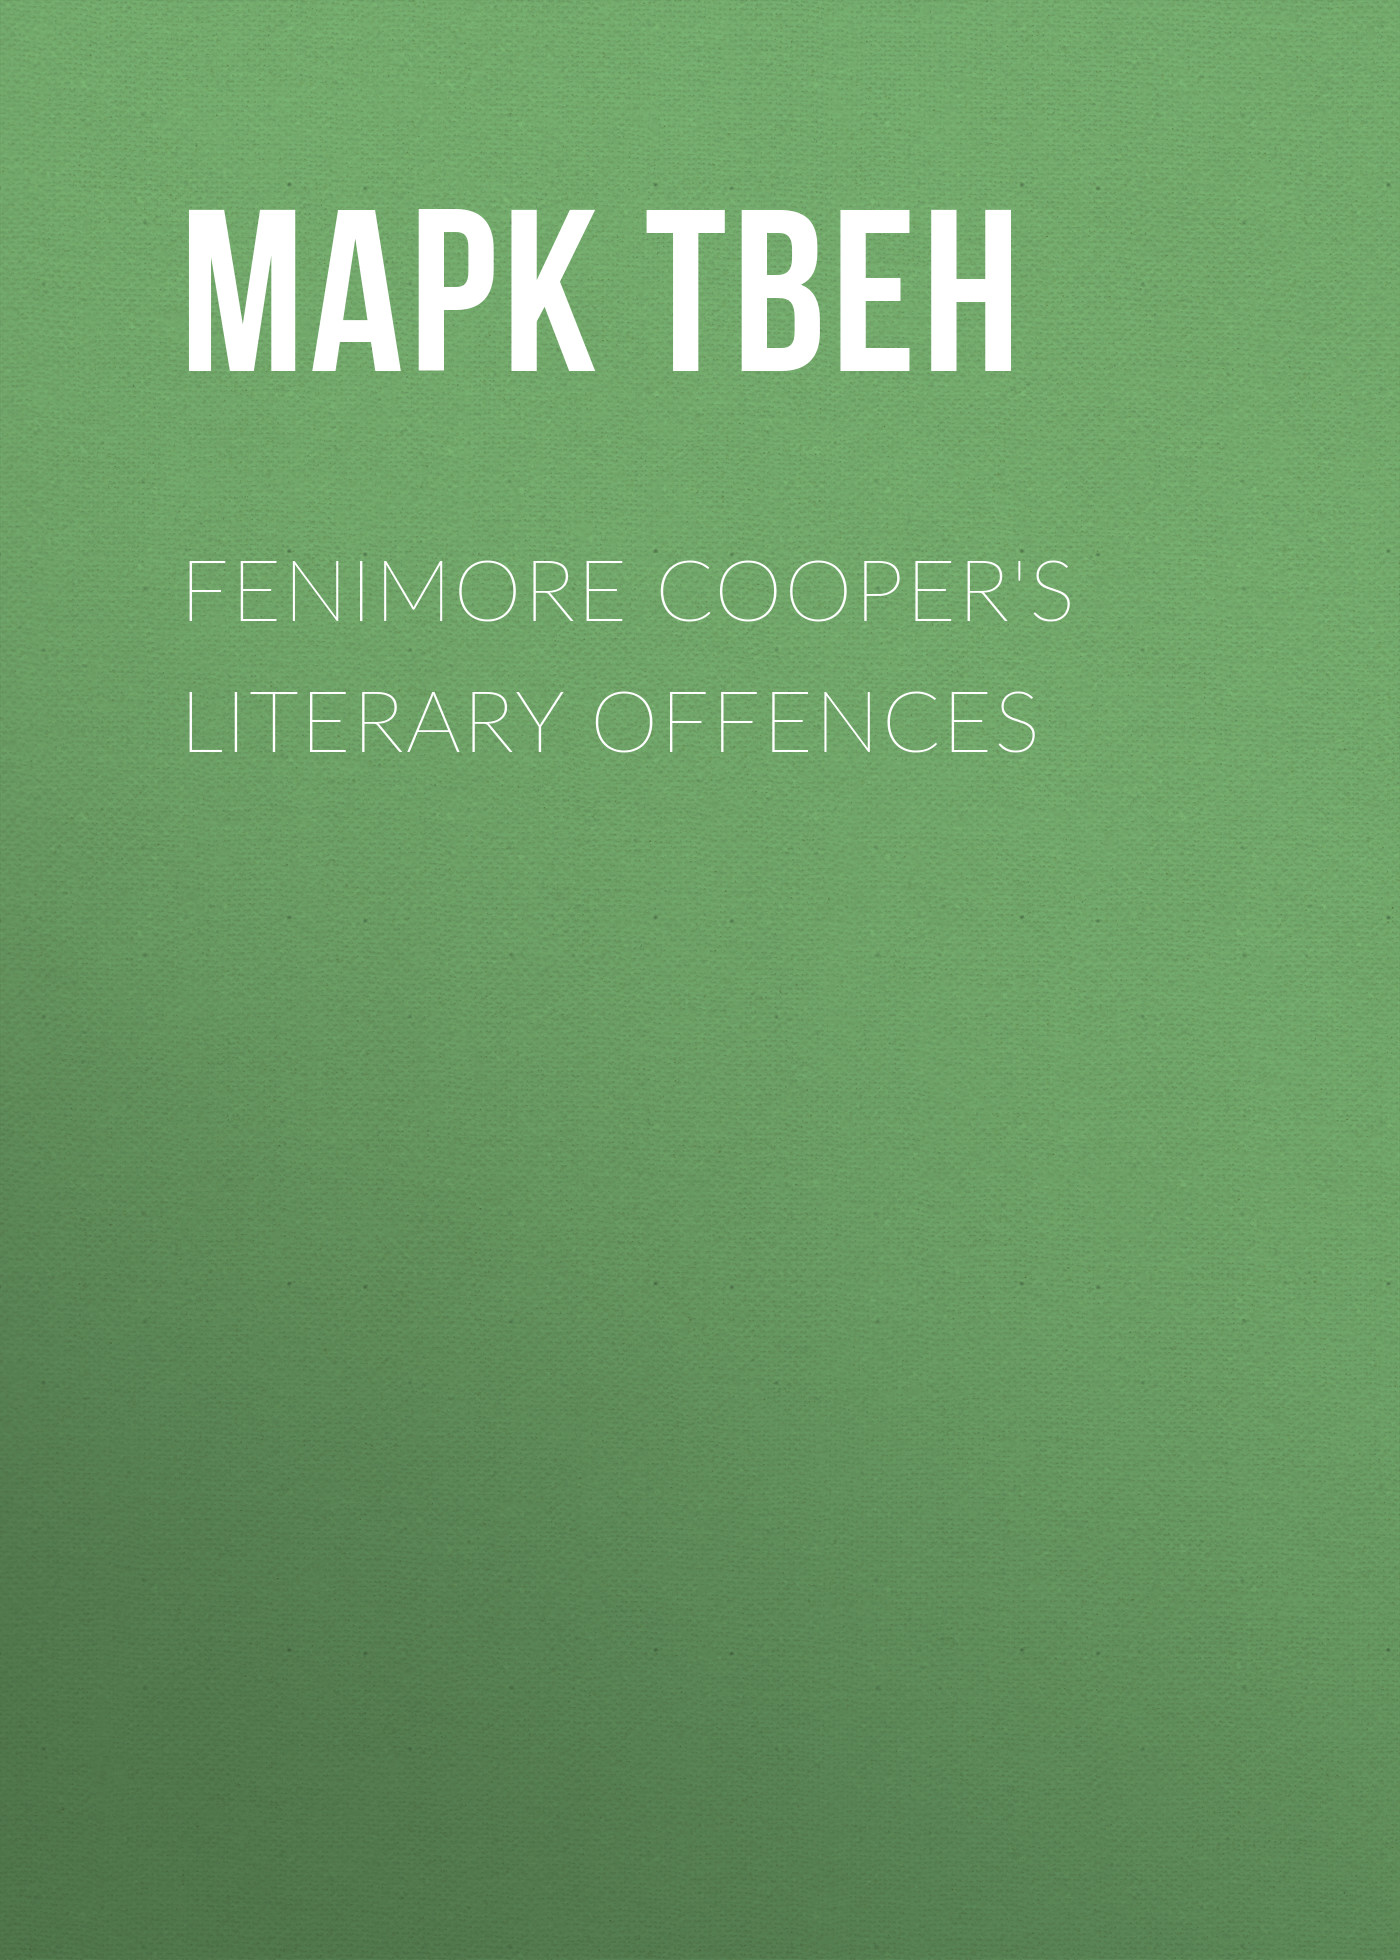 Книга Fenimore Cooper's Literary Offences из серии , созданная Mark Twain, может относится к жанру Зарубежная классика, Зарубежная старинная литература. Стоимость электронной книги Fenimore Cooper's Literary Offences с идентификатором 25474727 составляет 0 руб.